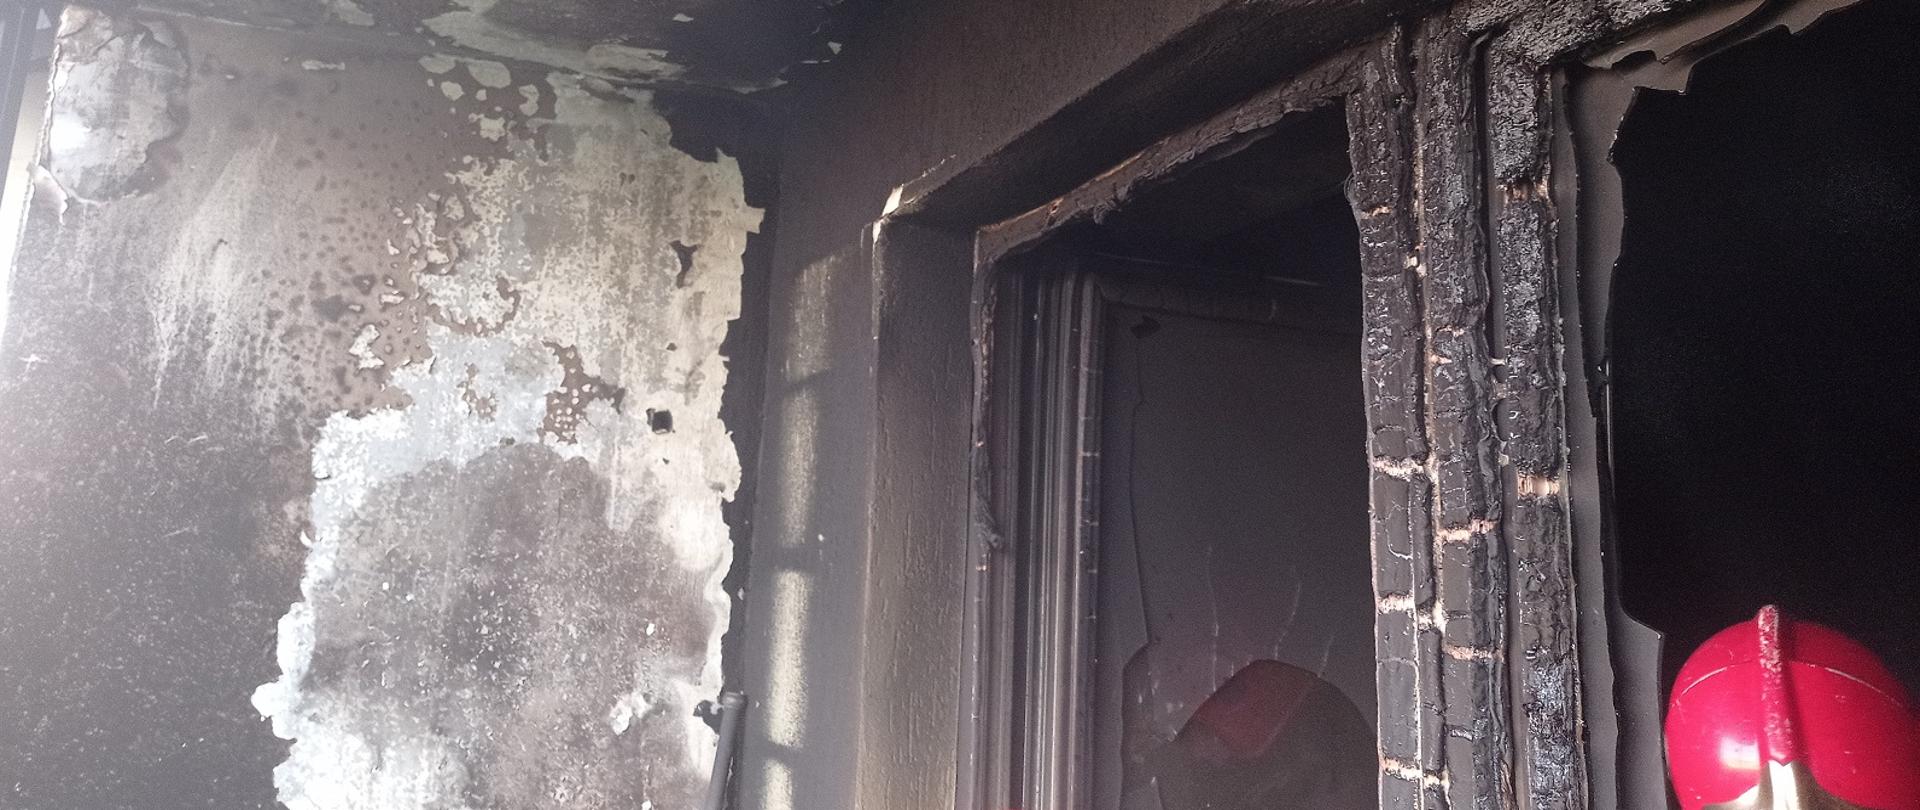 Zdjęcie obrazuje wypalone ściany i futrynę okna oraz hełm strażacki.